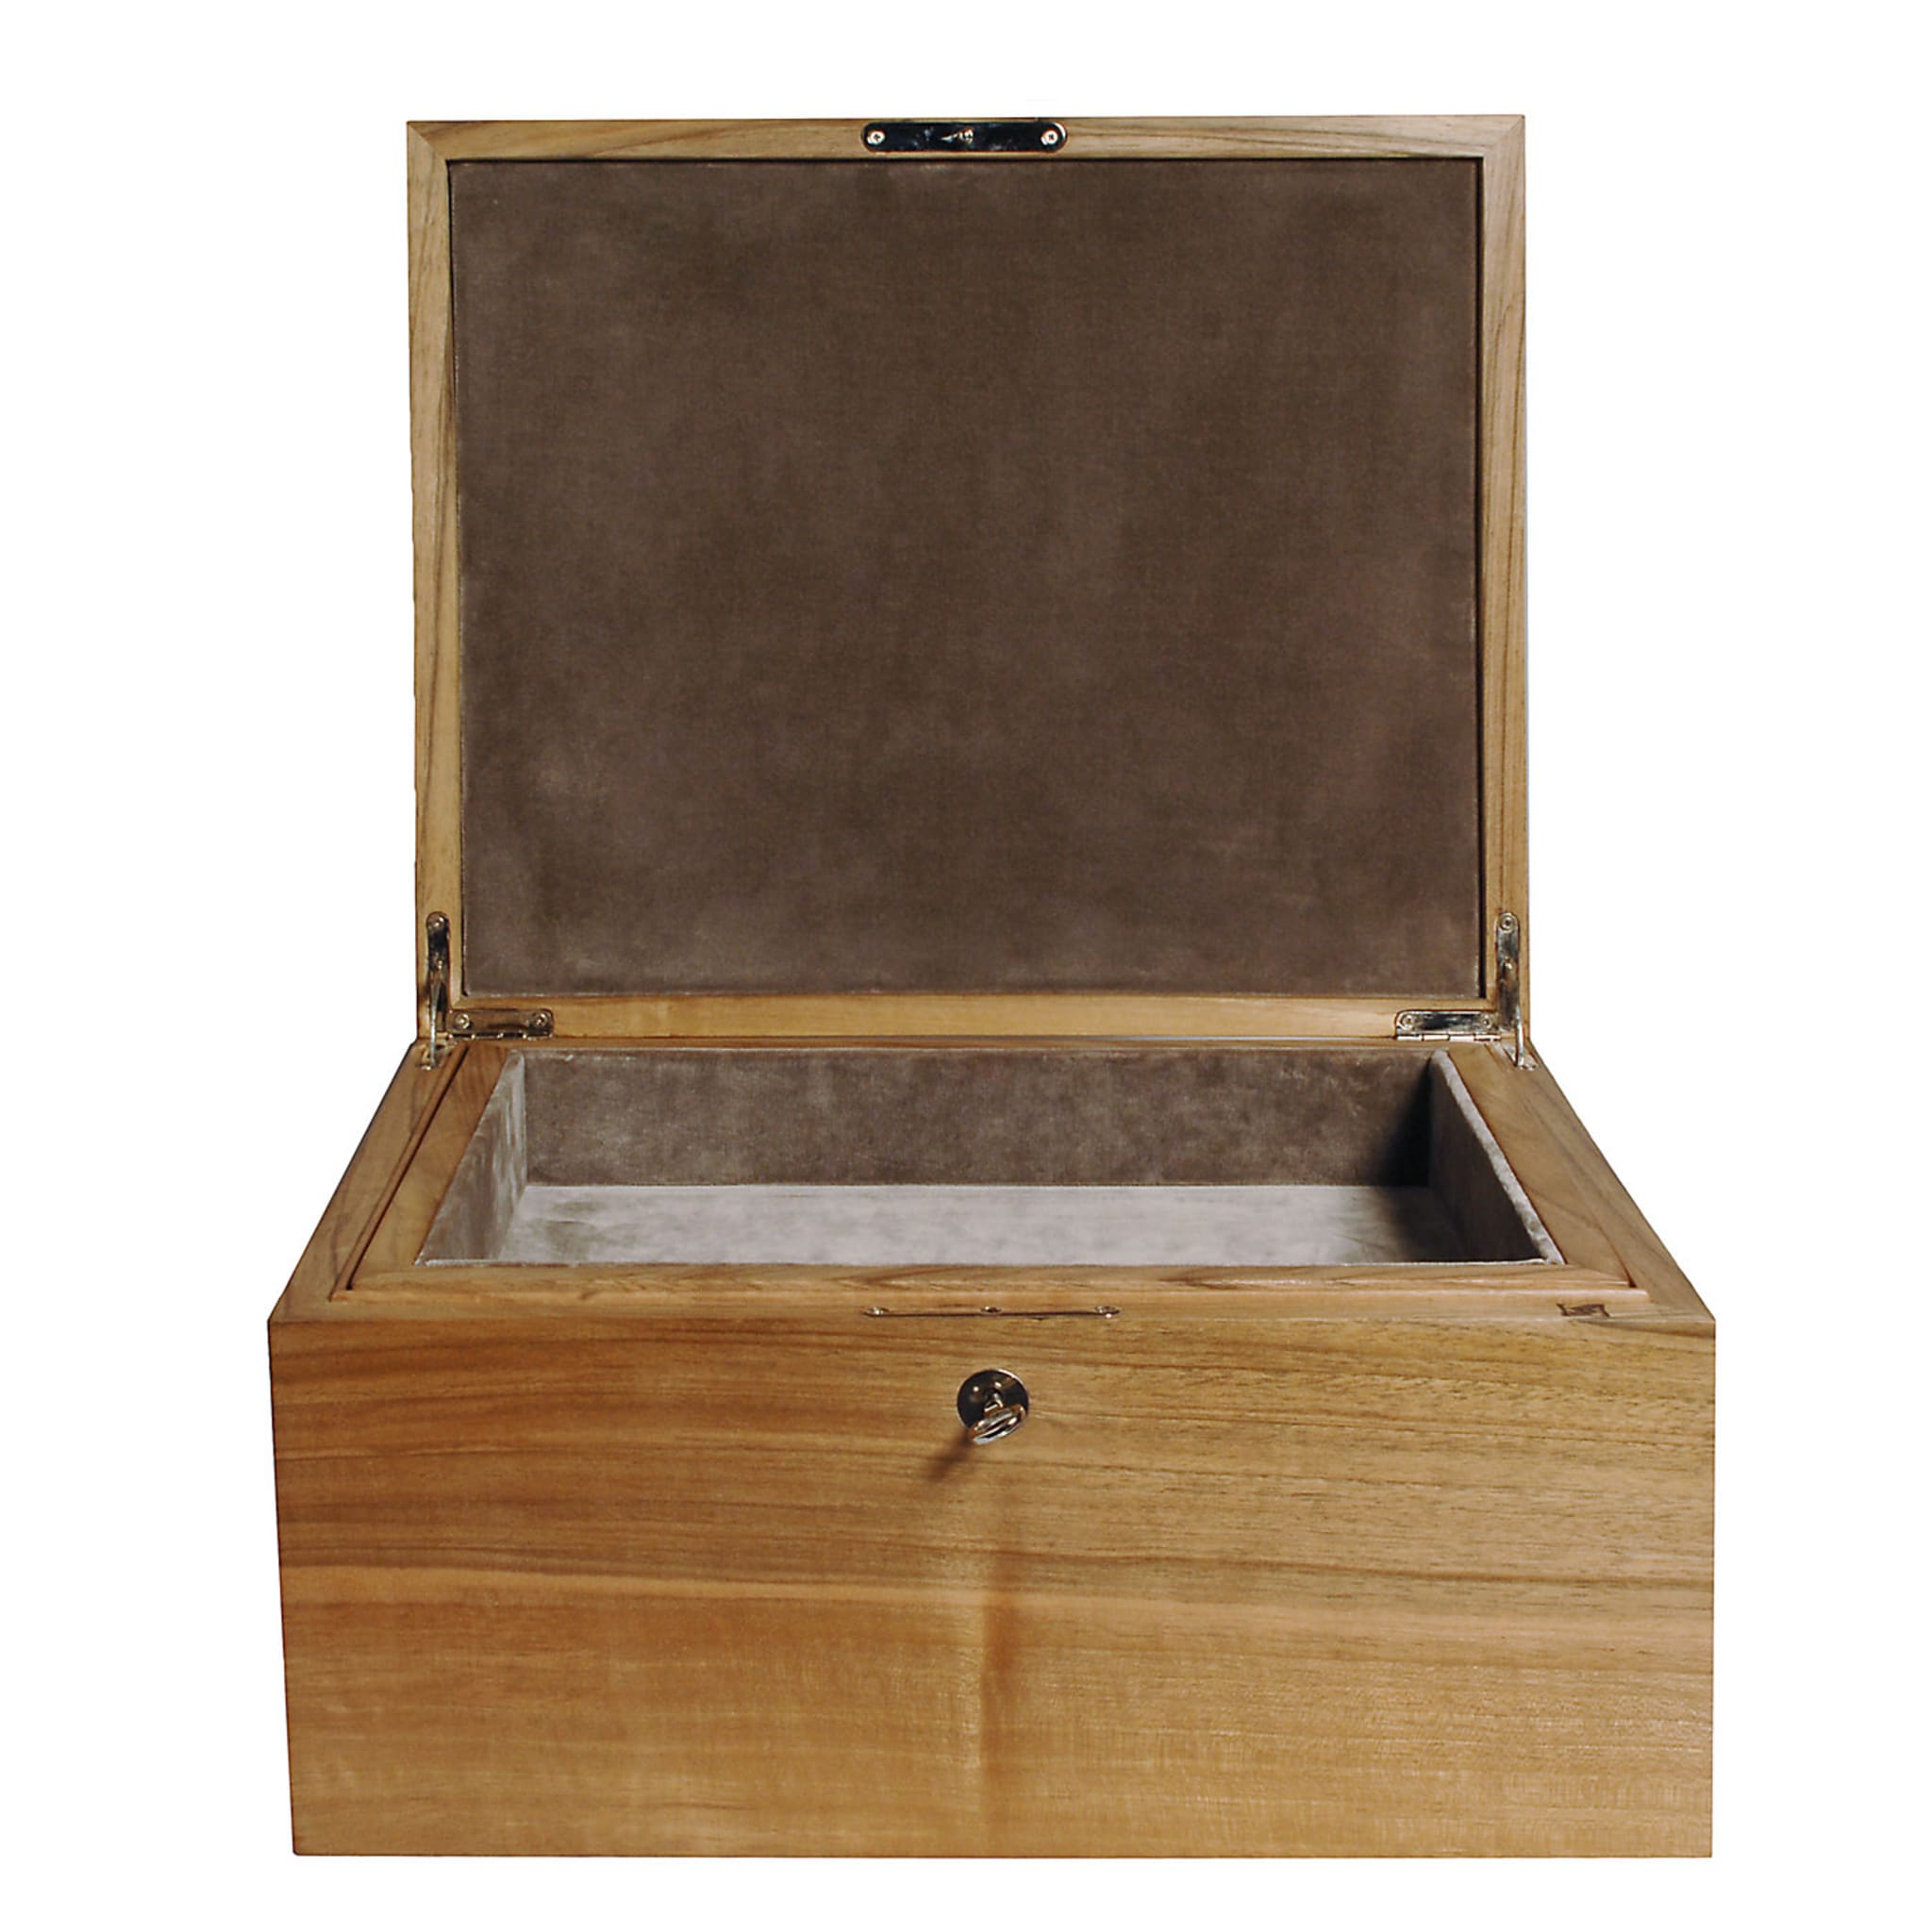 Box in Walnut Wood - Alternative view 1